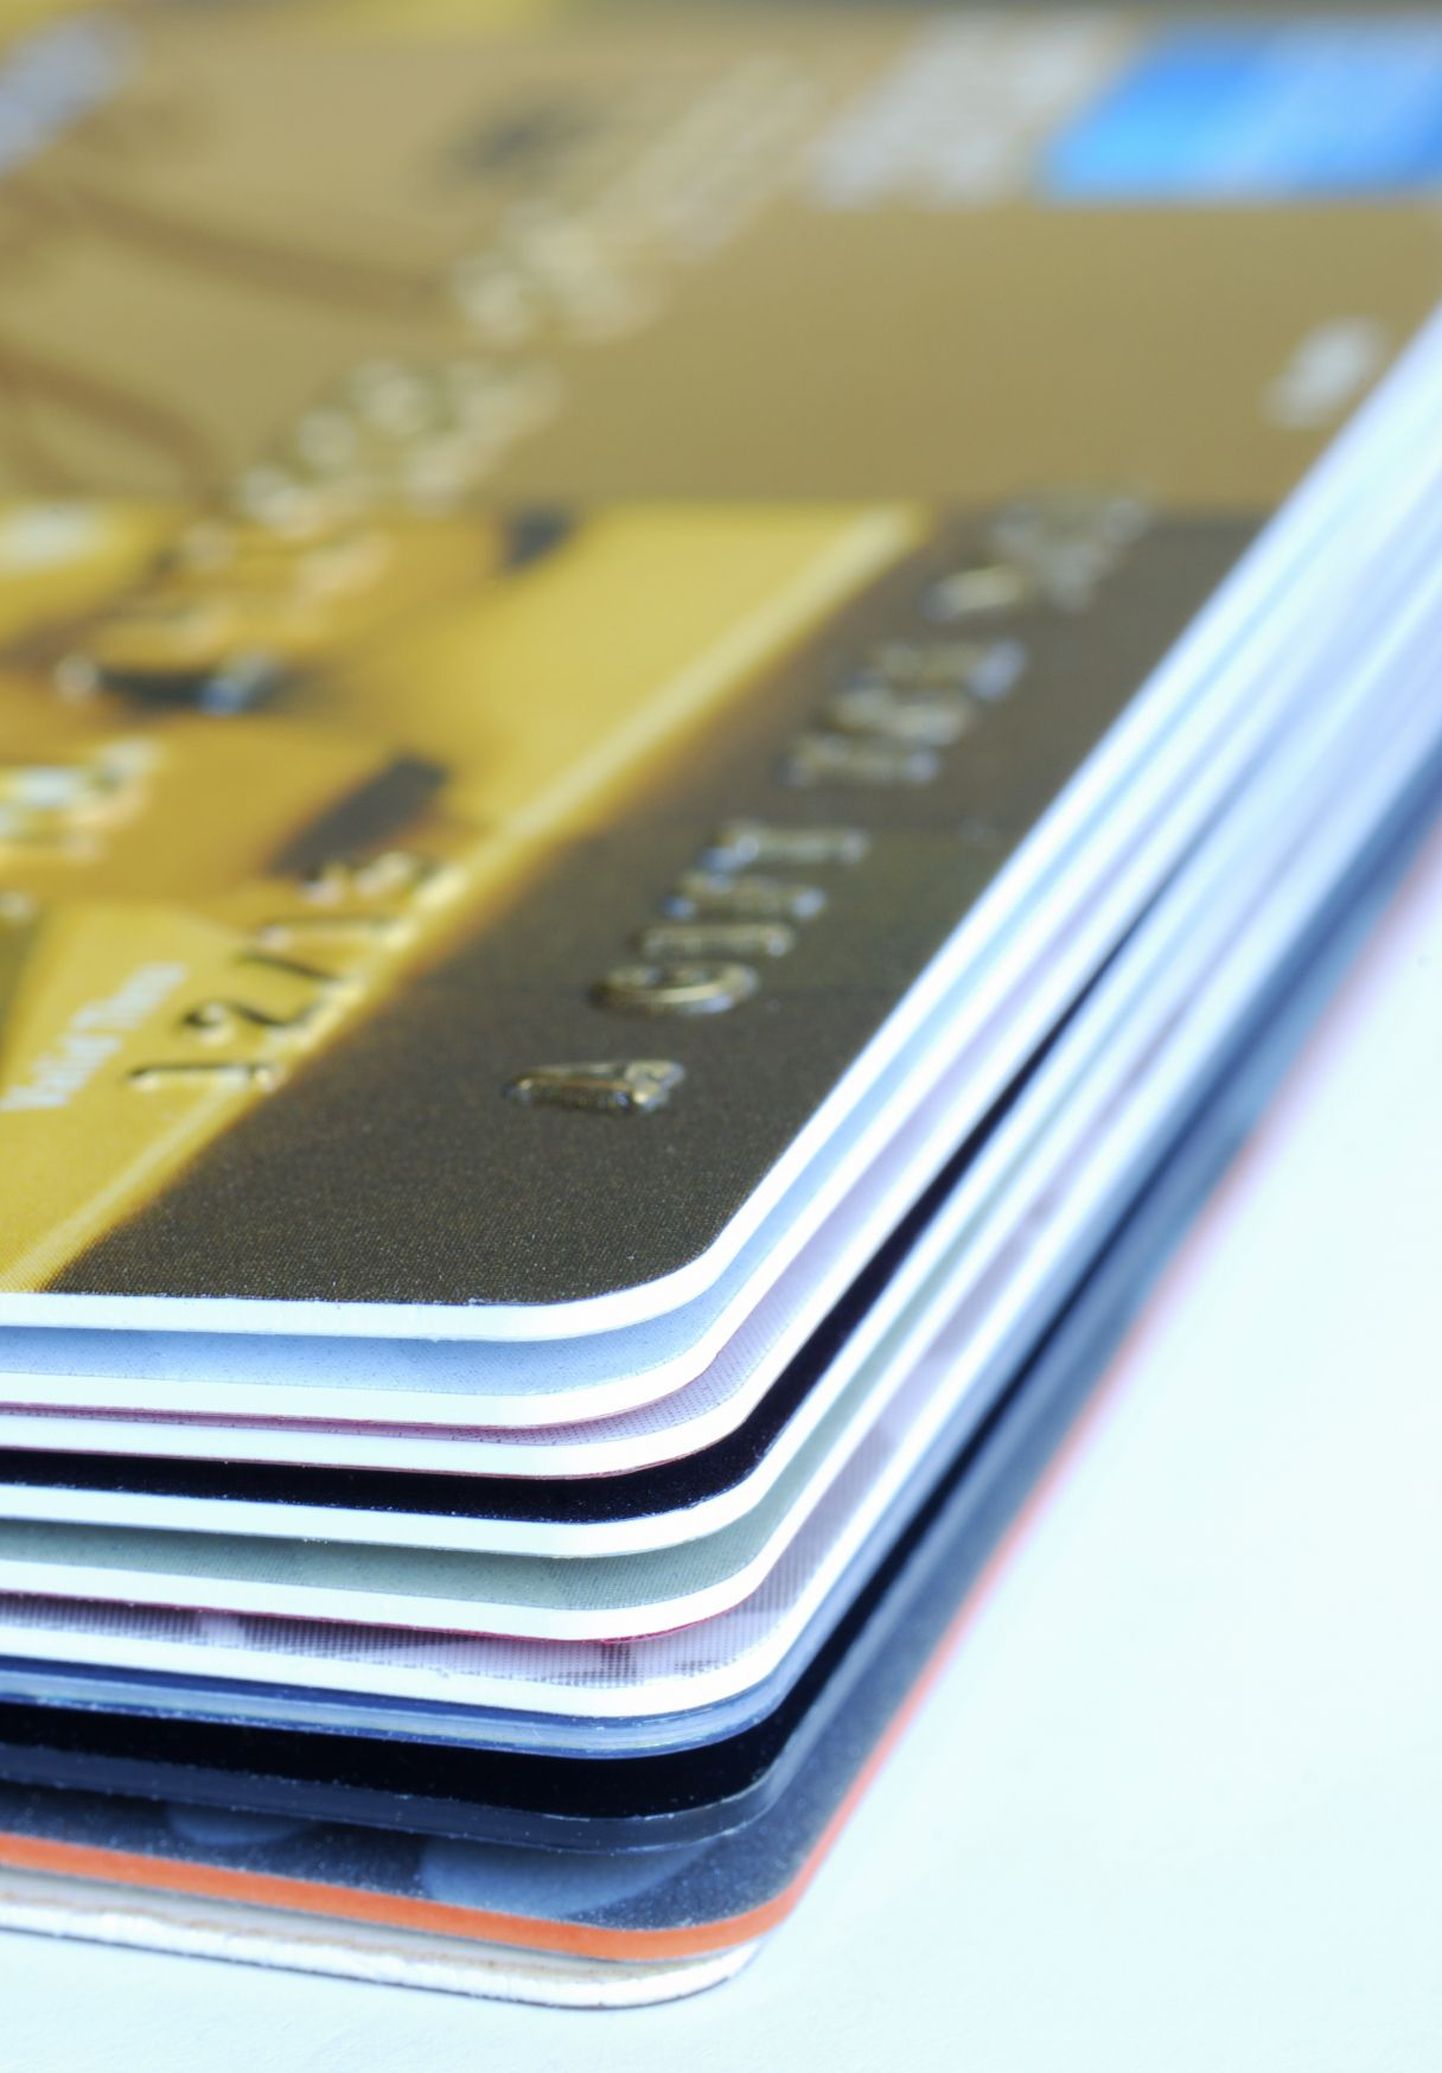 Kui klient ise märku ei anna, siis saadab süsteem automaatselt uue kallima pangakaardi.